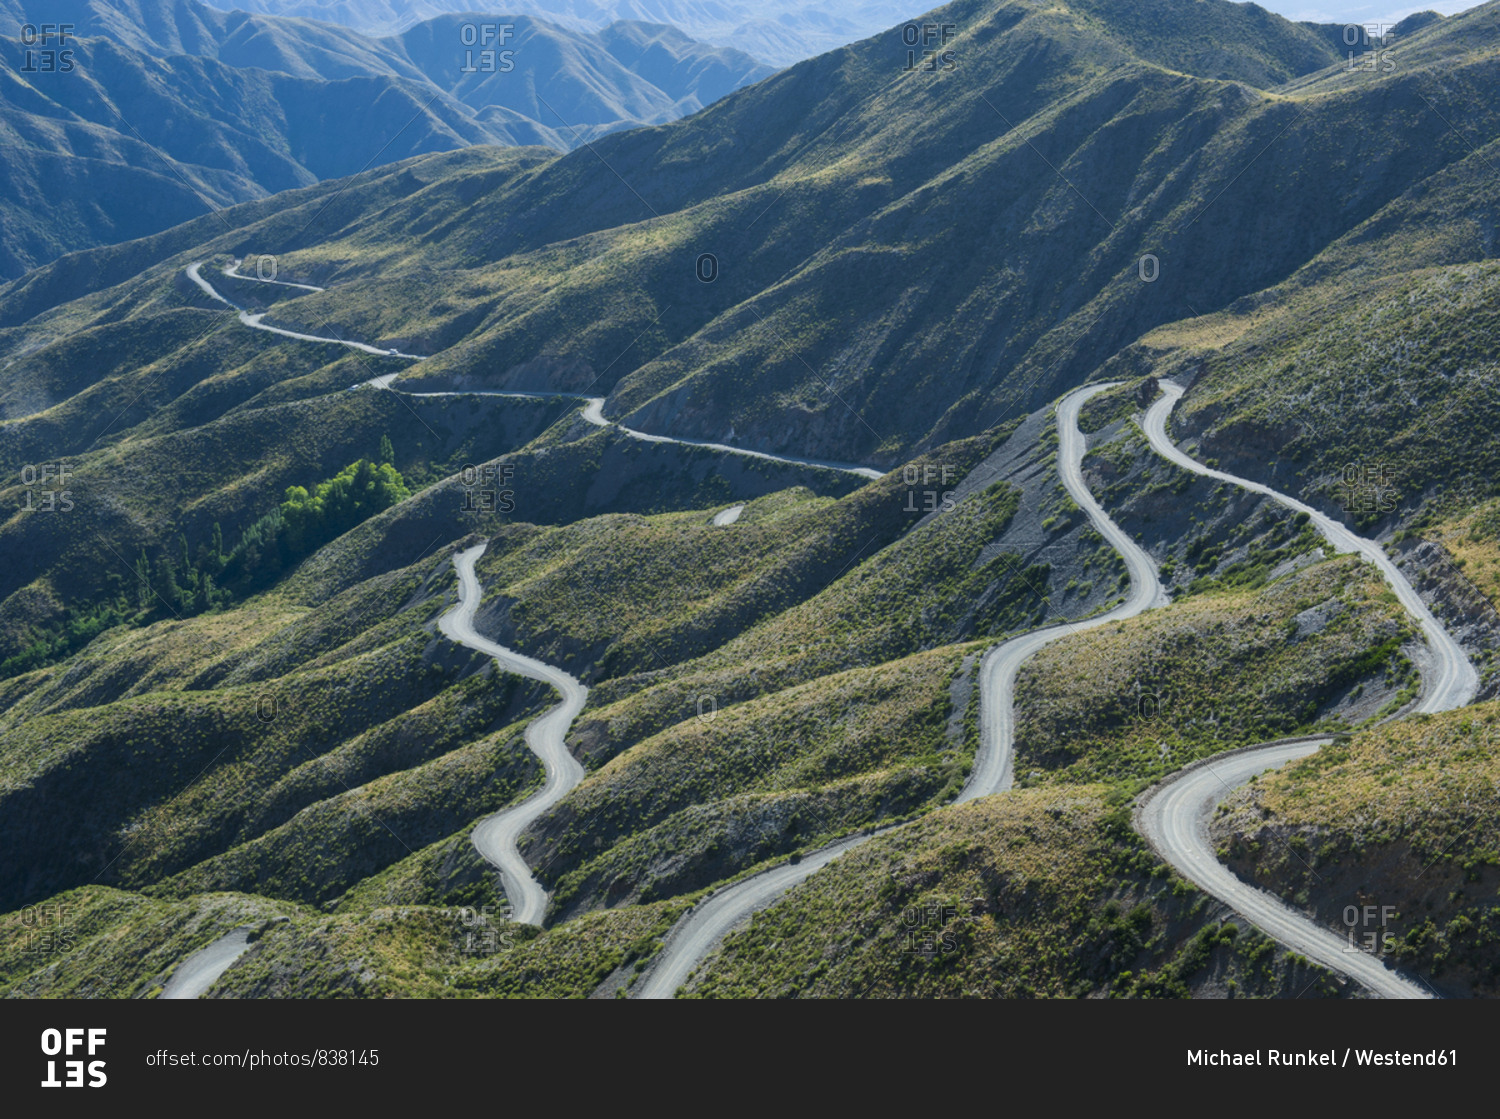 Serpentine- mountain road near Mendoza- Argentina- South America